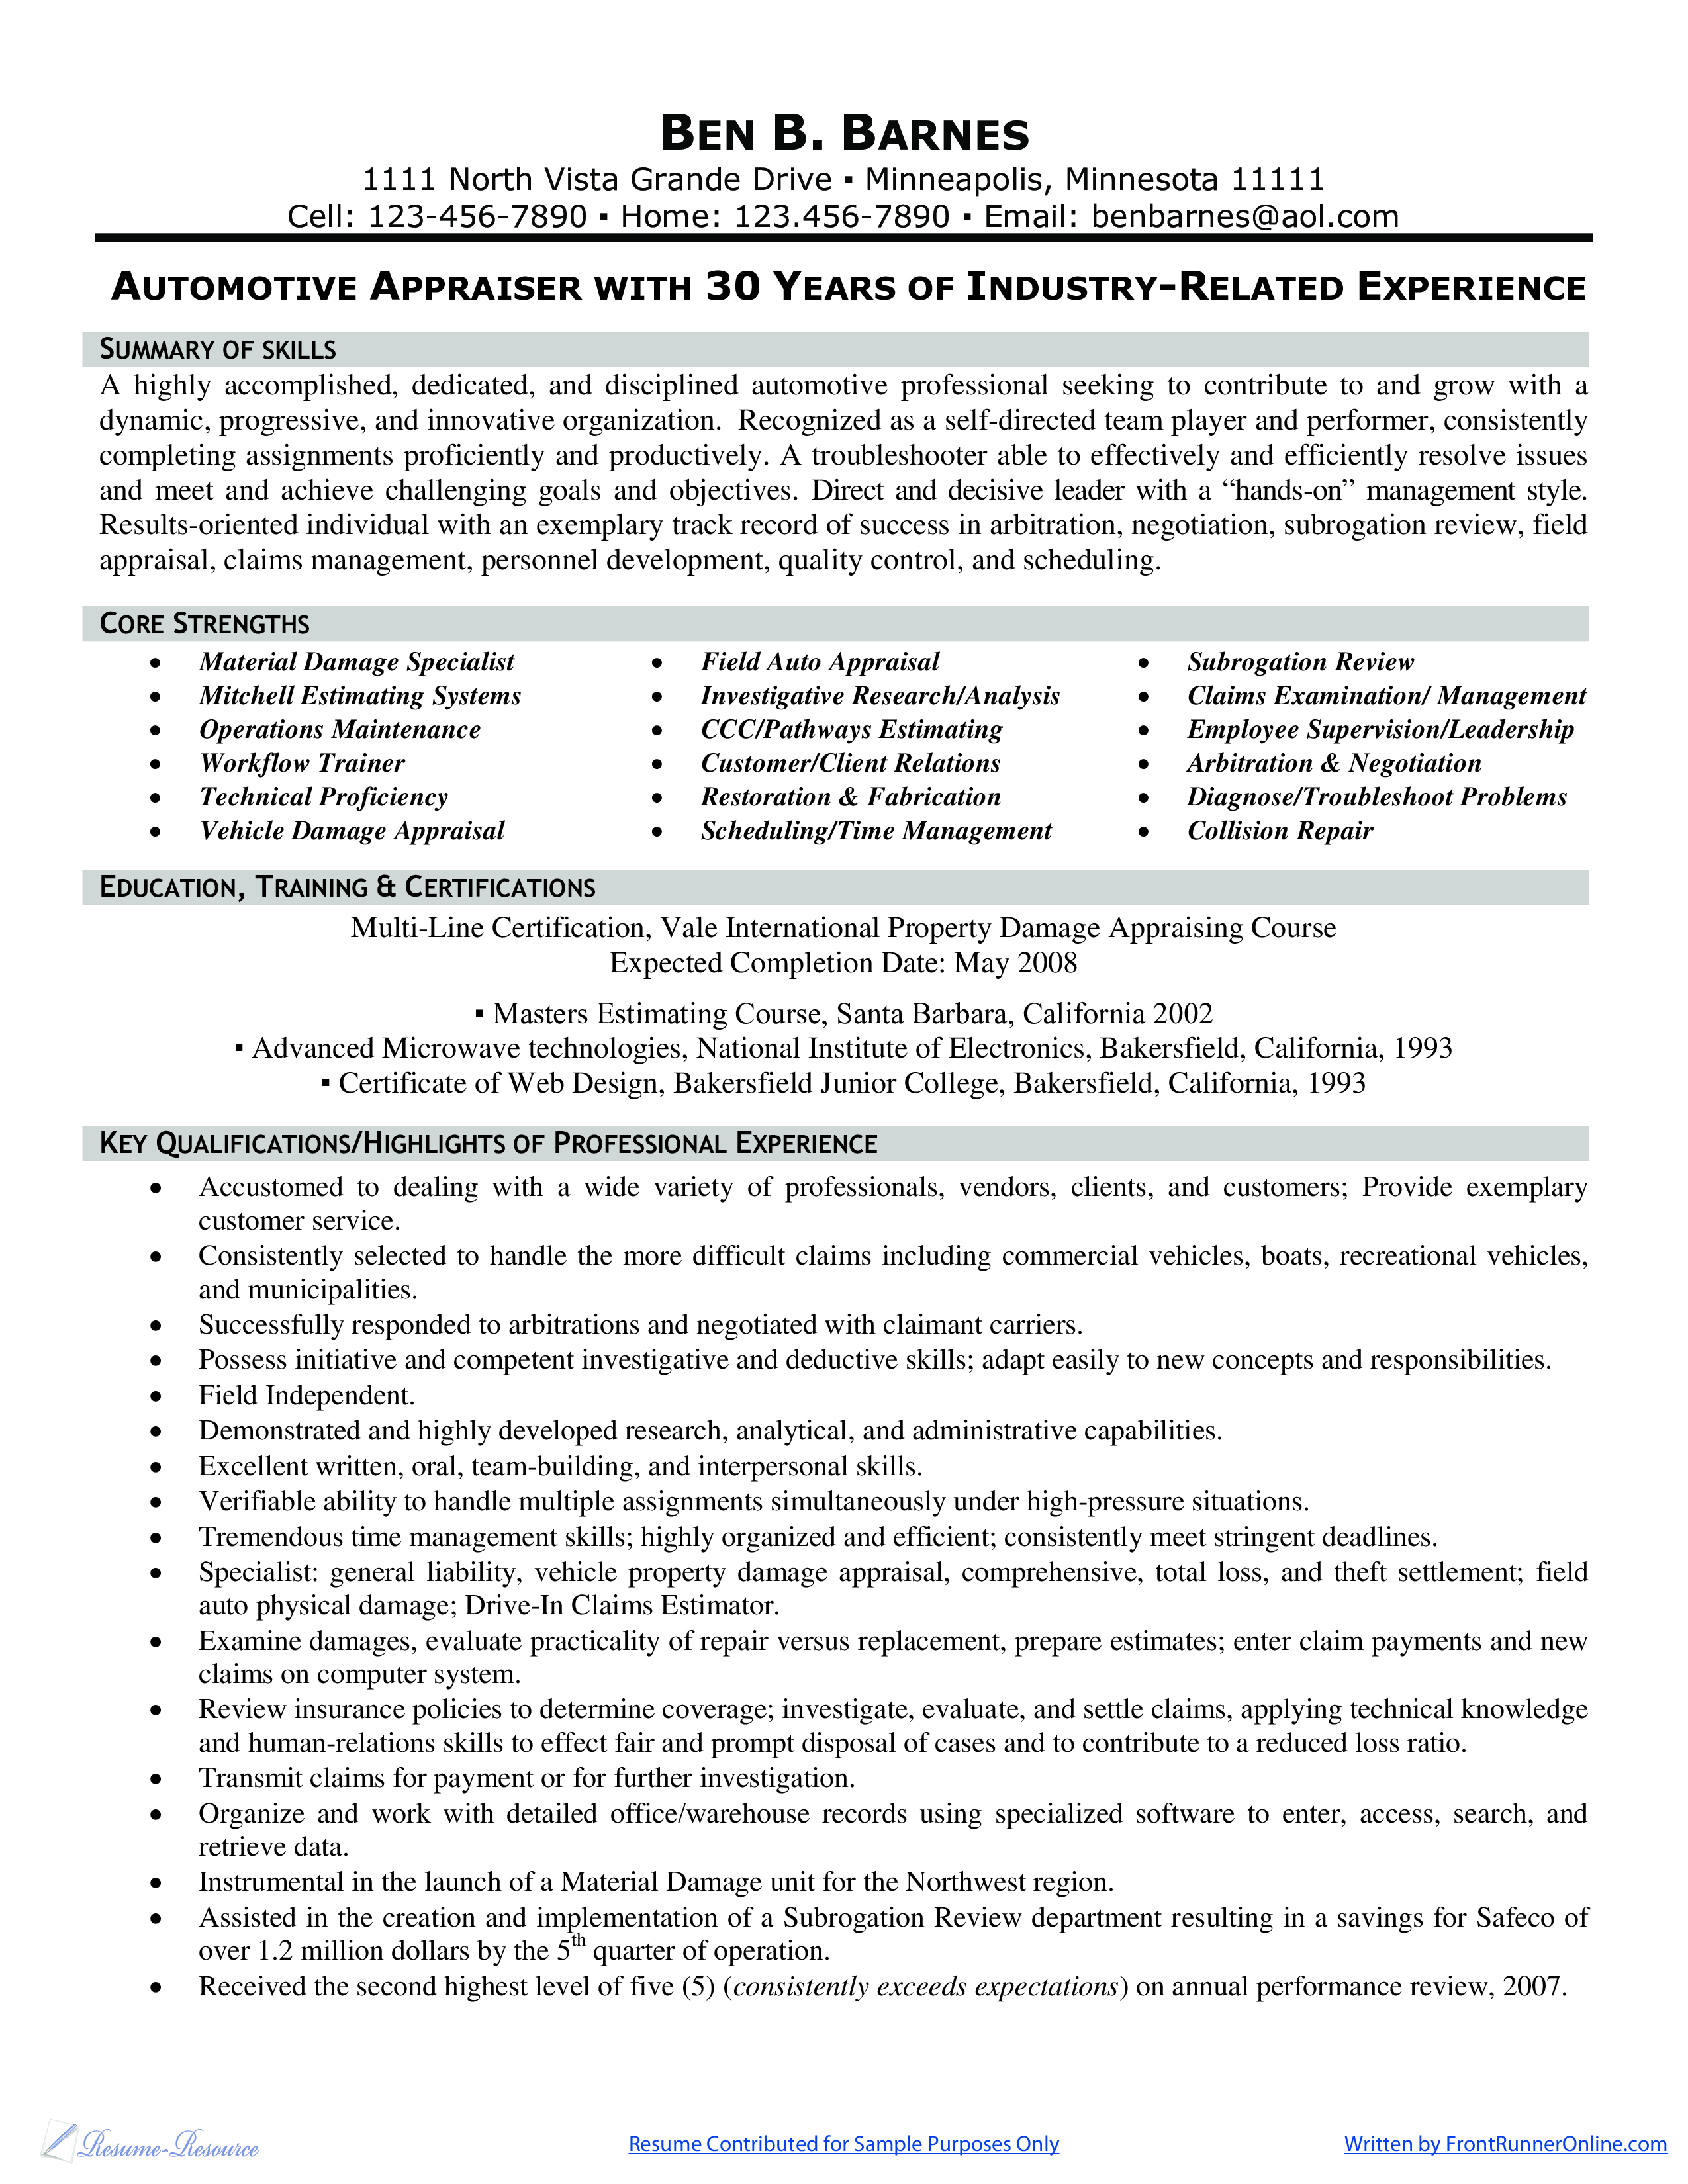 Automotive Appraiser & Adjuster Resume 模板